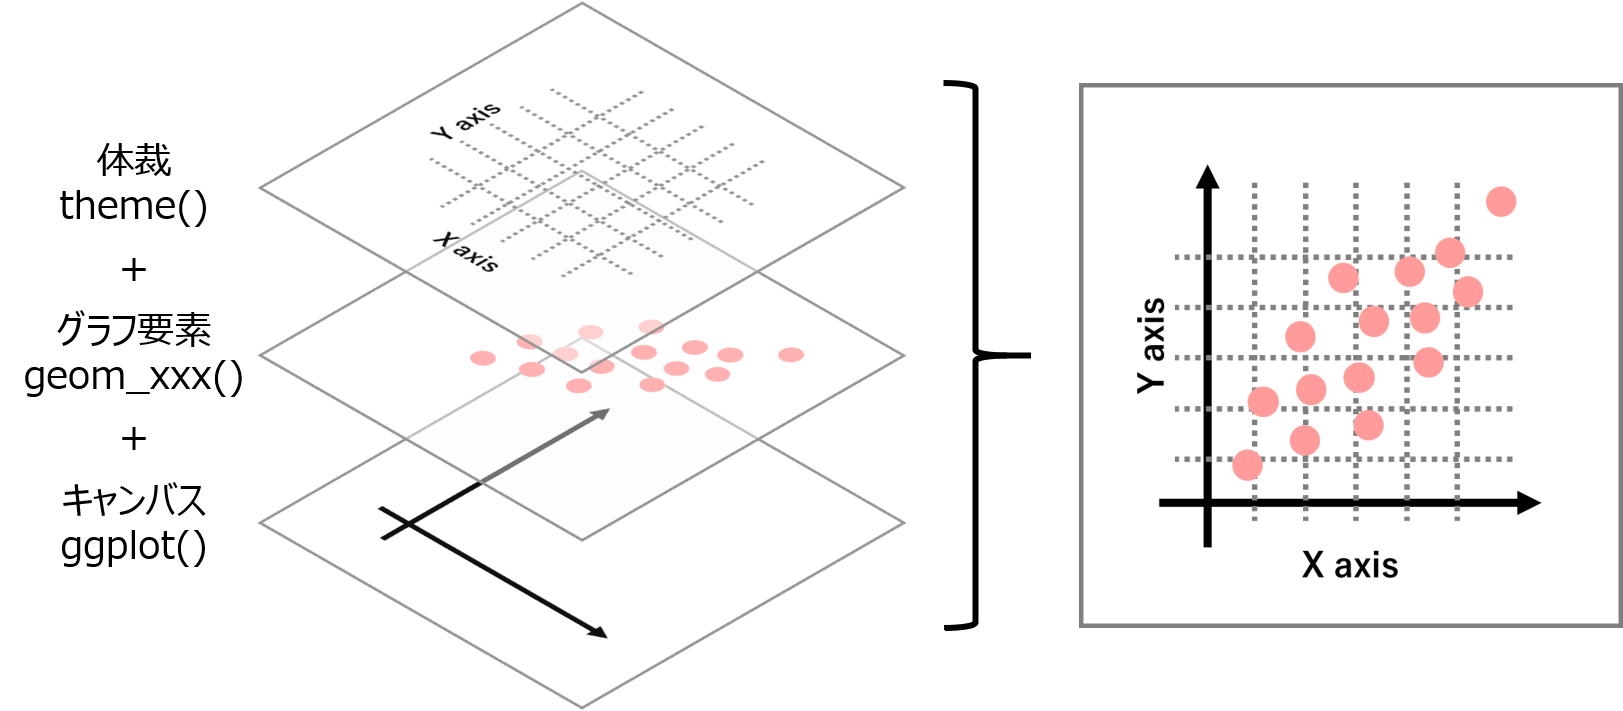 ggplot2は各レイヤーをそれぞれの関数でオブジェクトとして作成し、それらを足し合わせることでグラフを描きます。